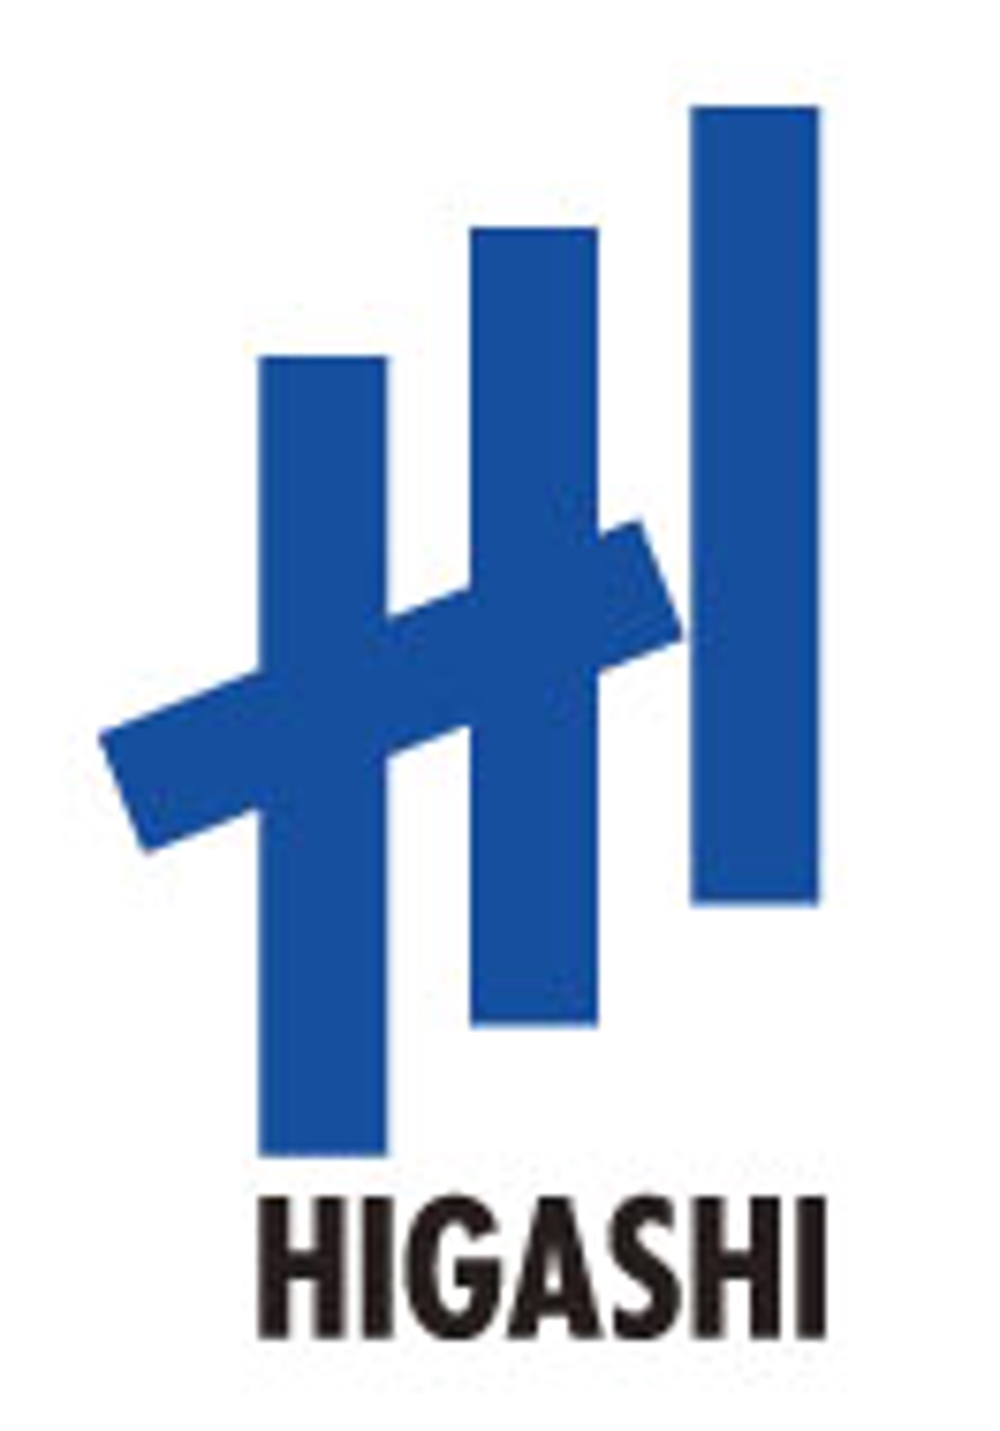 HIGASHI-1.jpg